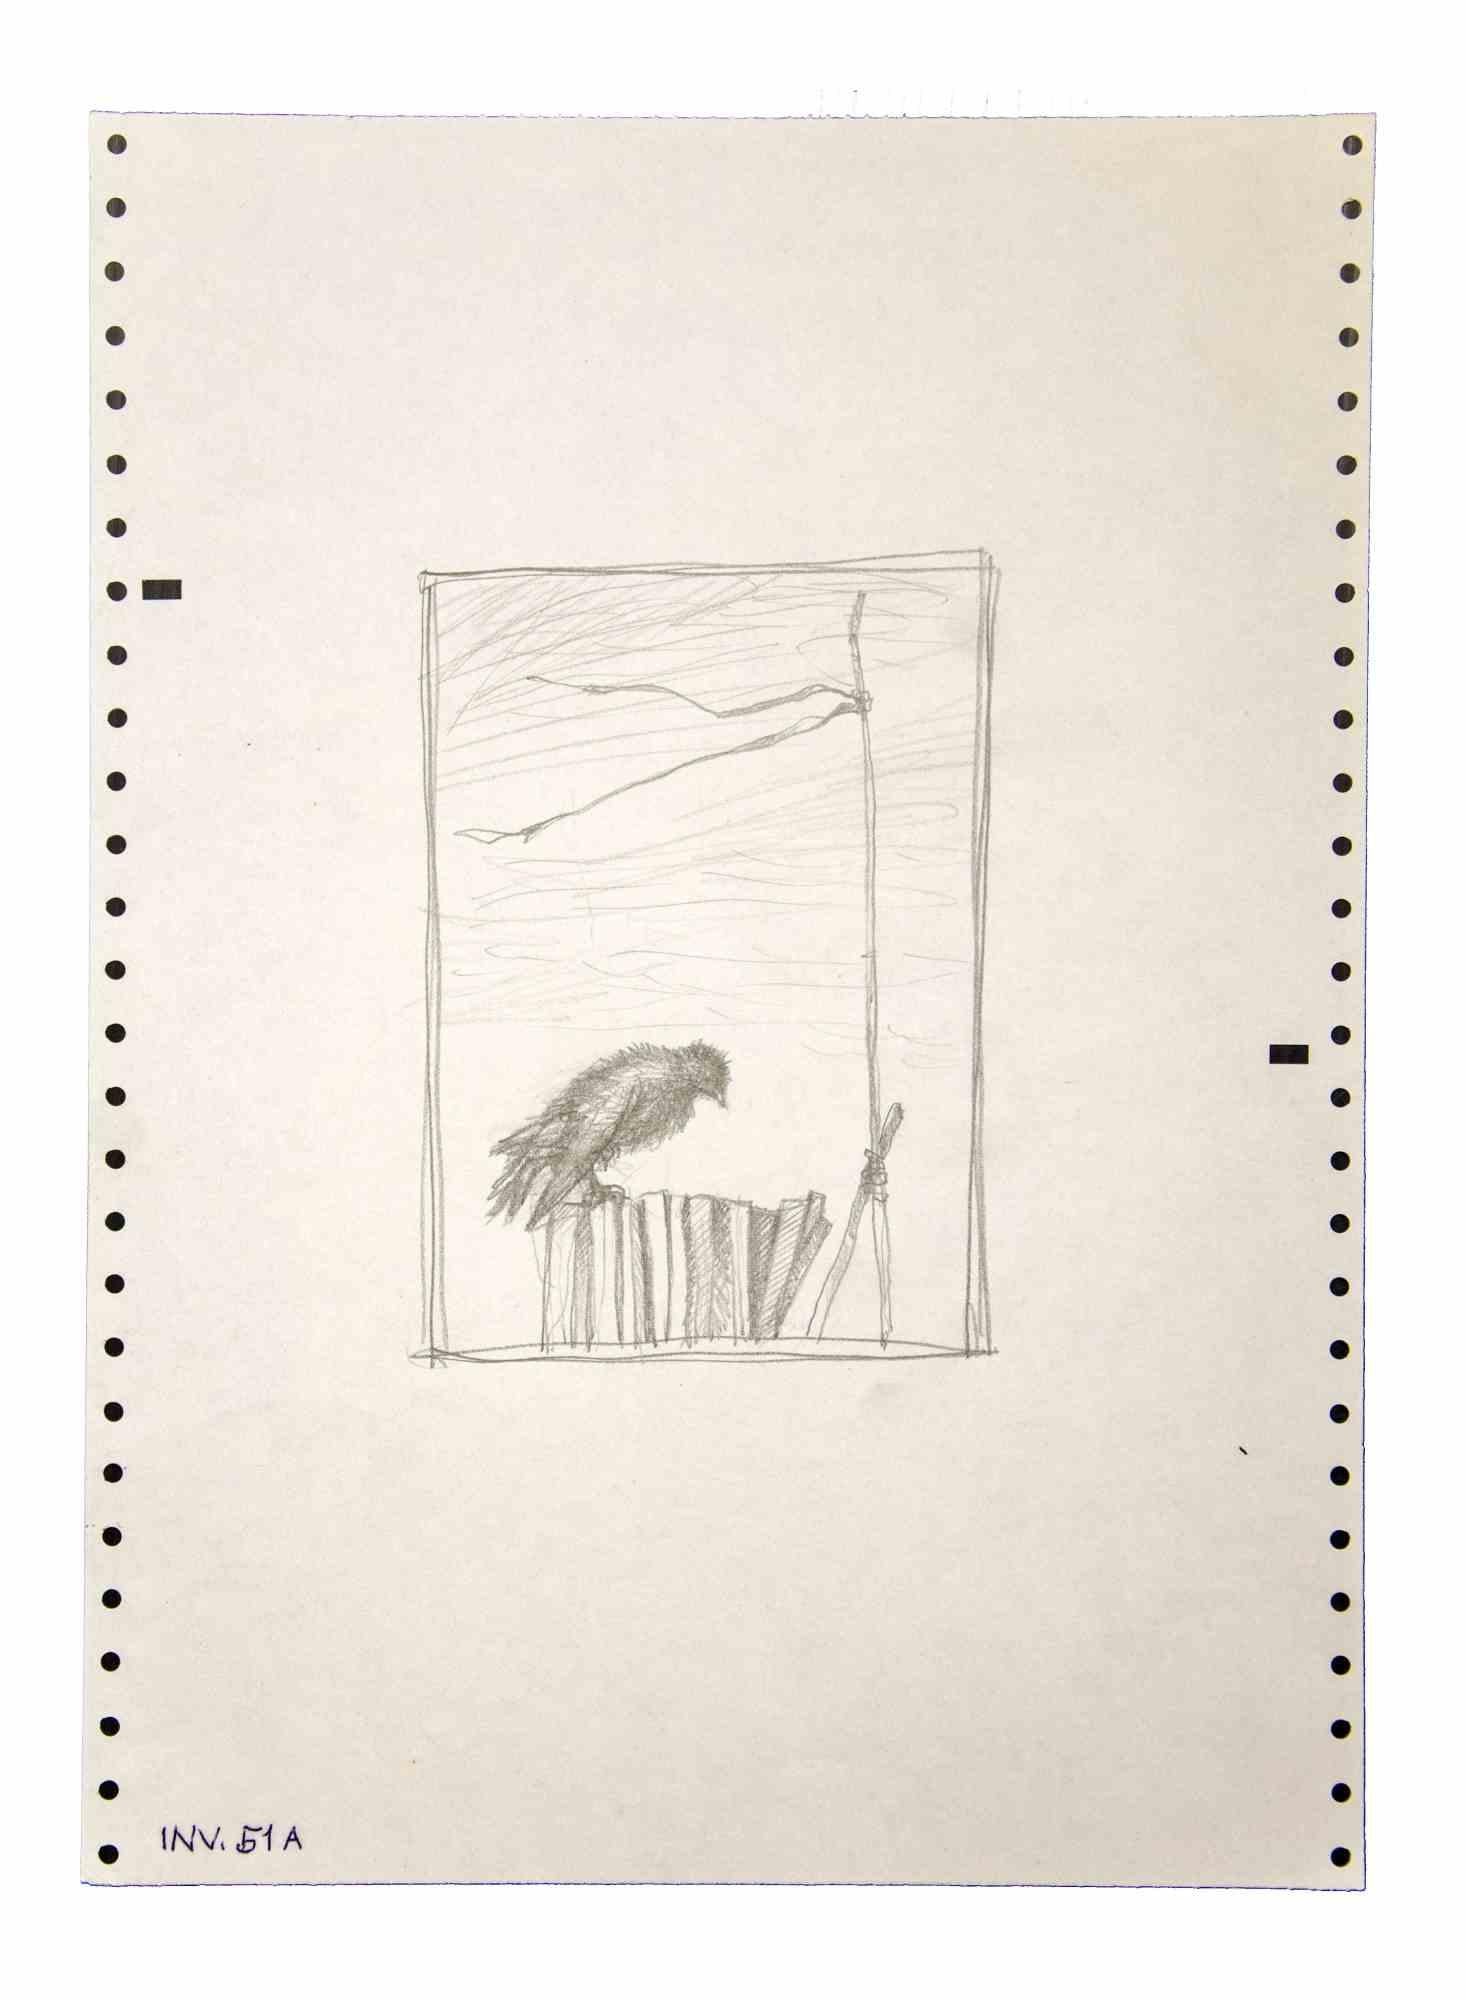 Der Vogel ist ein Original  Kunstwerk, das in den 1970er Jahren von dem italienischen zeitgenössischen Künstler  Leo Guida  (1992 - 2017).

Originalzeichnungen mit Bleistift auf Papier.

Guter Zustand, aber gealtert.

Das Kunstwerk wird durch